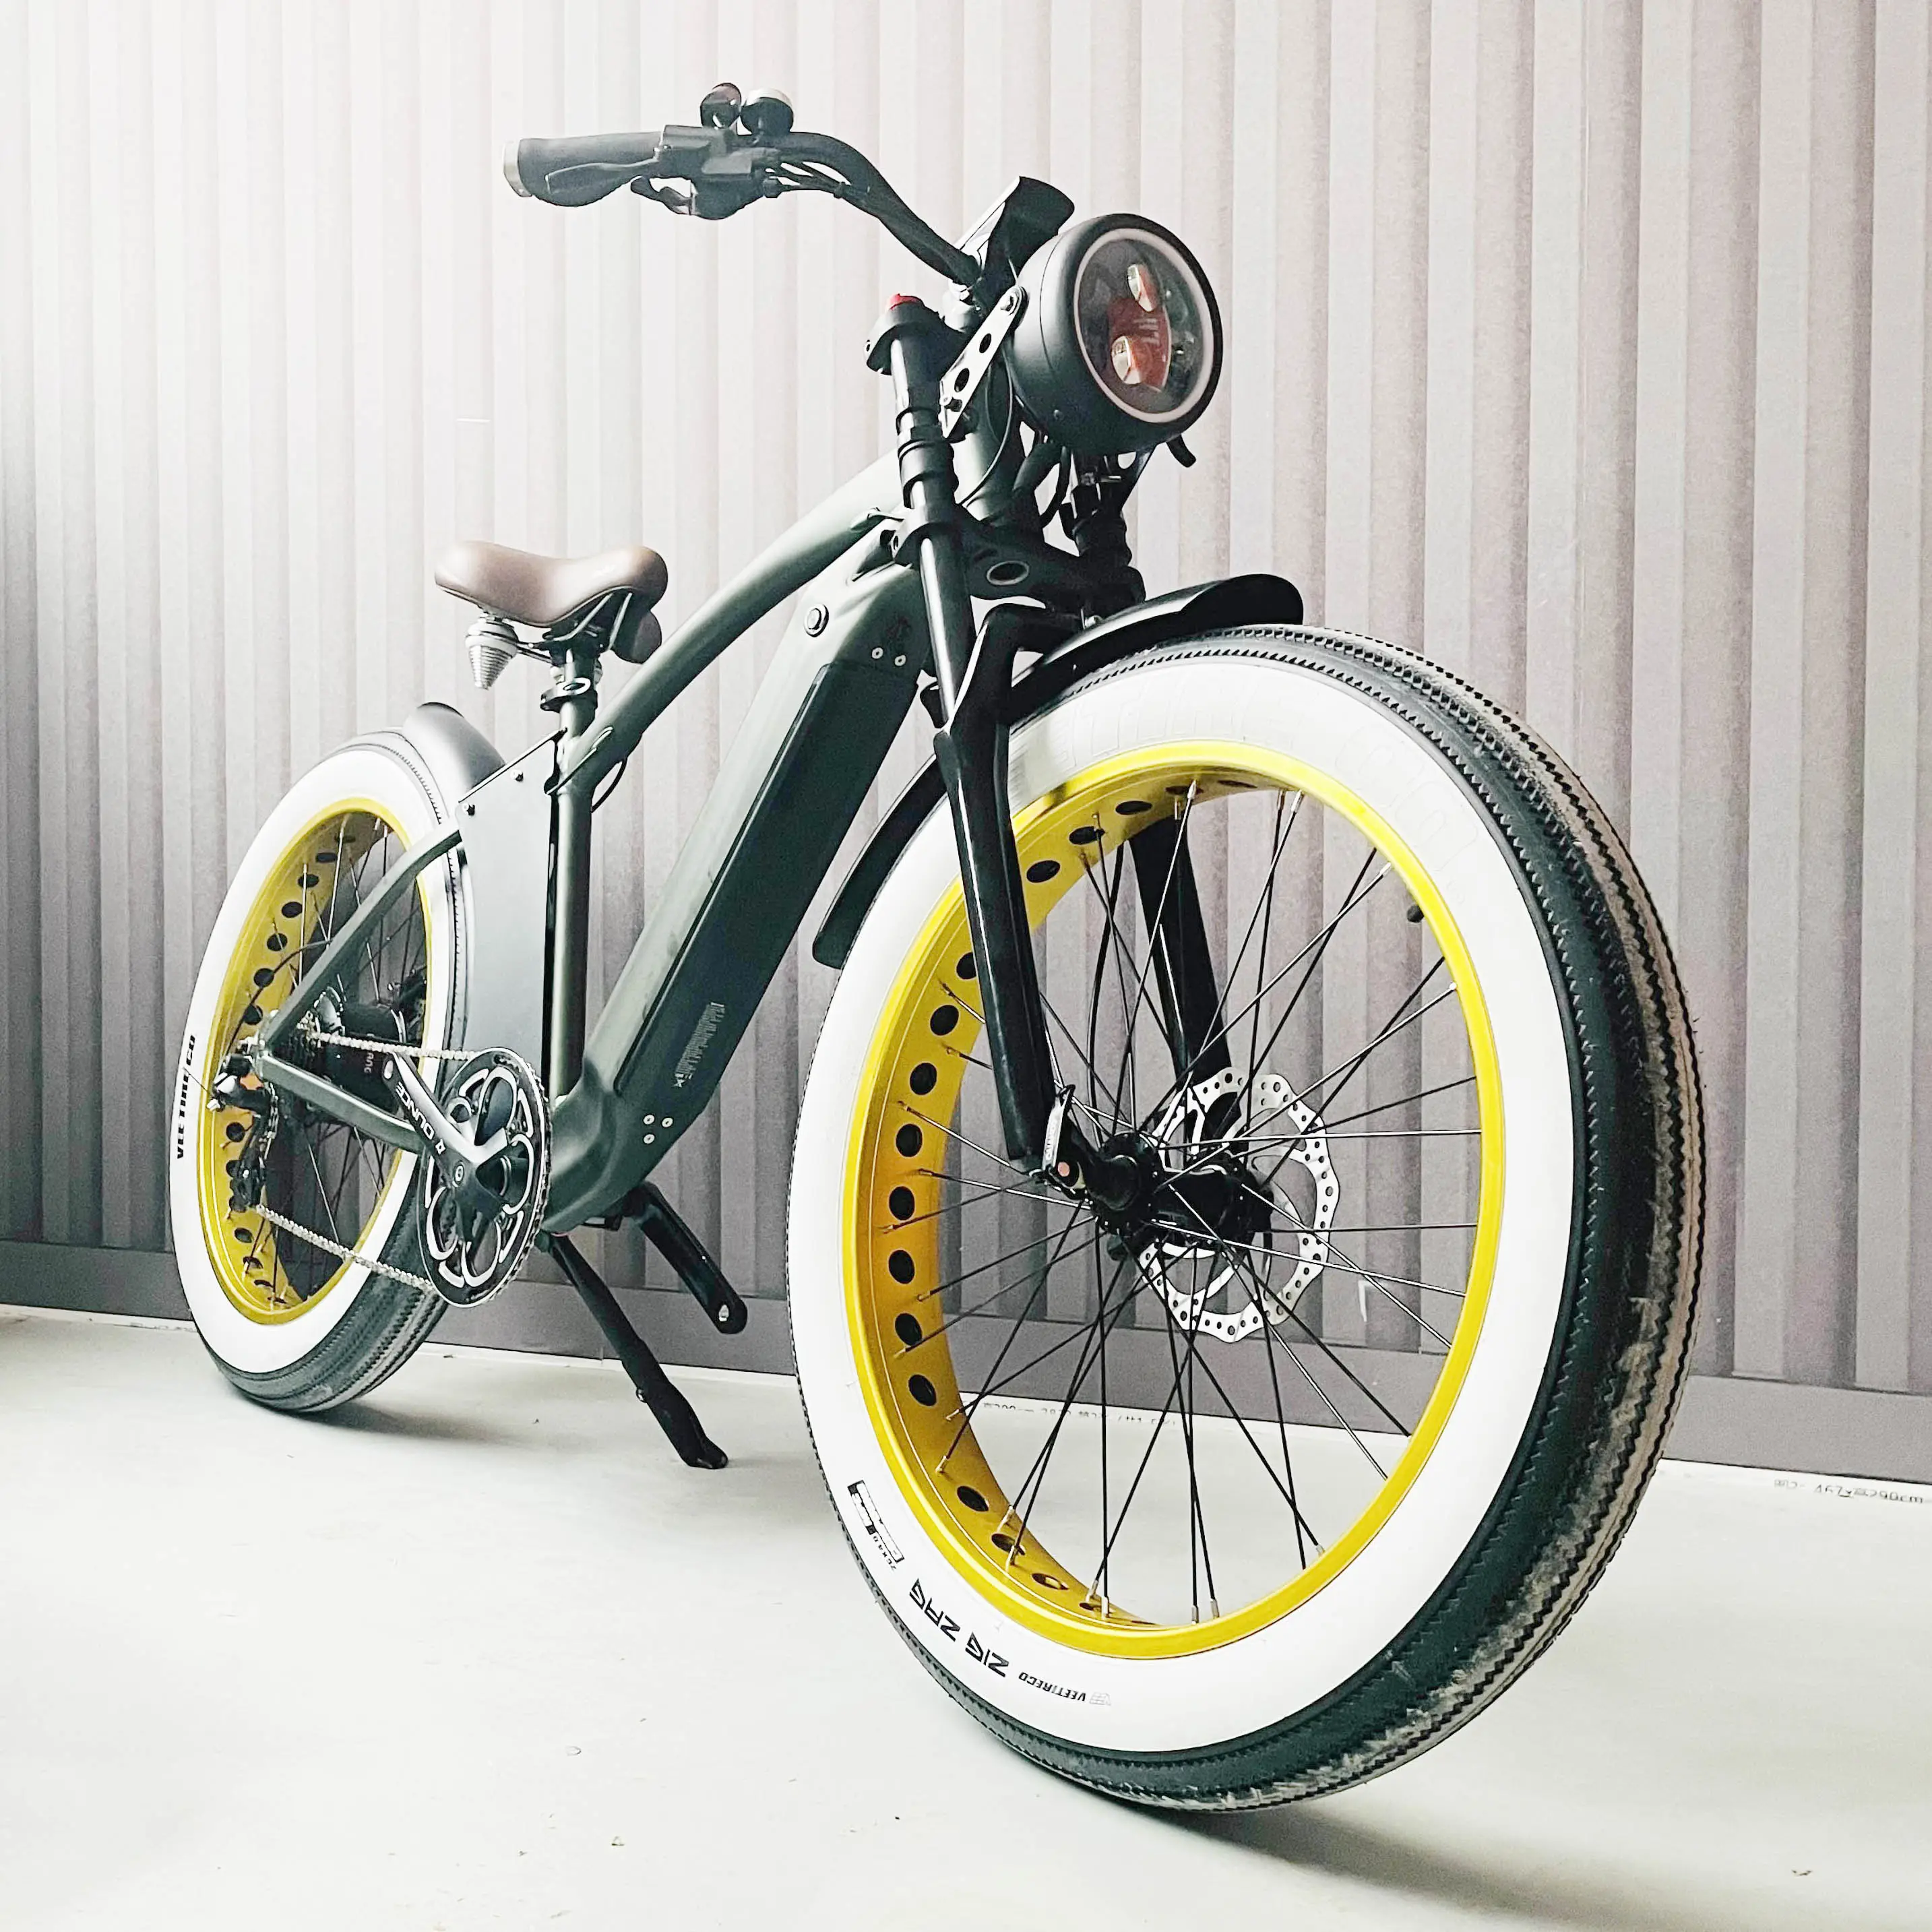 MF-908 Aluminium legierung 7 Geschwindigkeit Fahrrad für Erwachsene elektrische Vintage fetten Reifen Beach Cruiser Elektro fahrrad